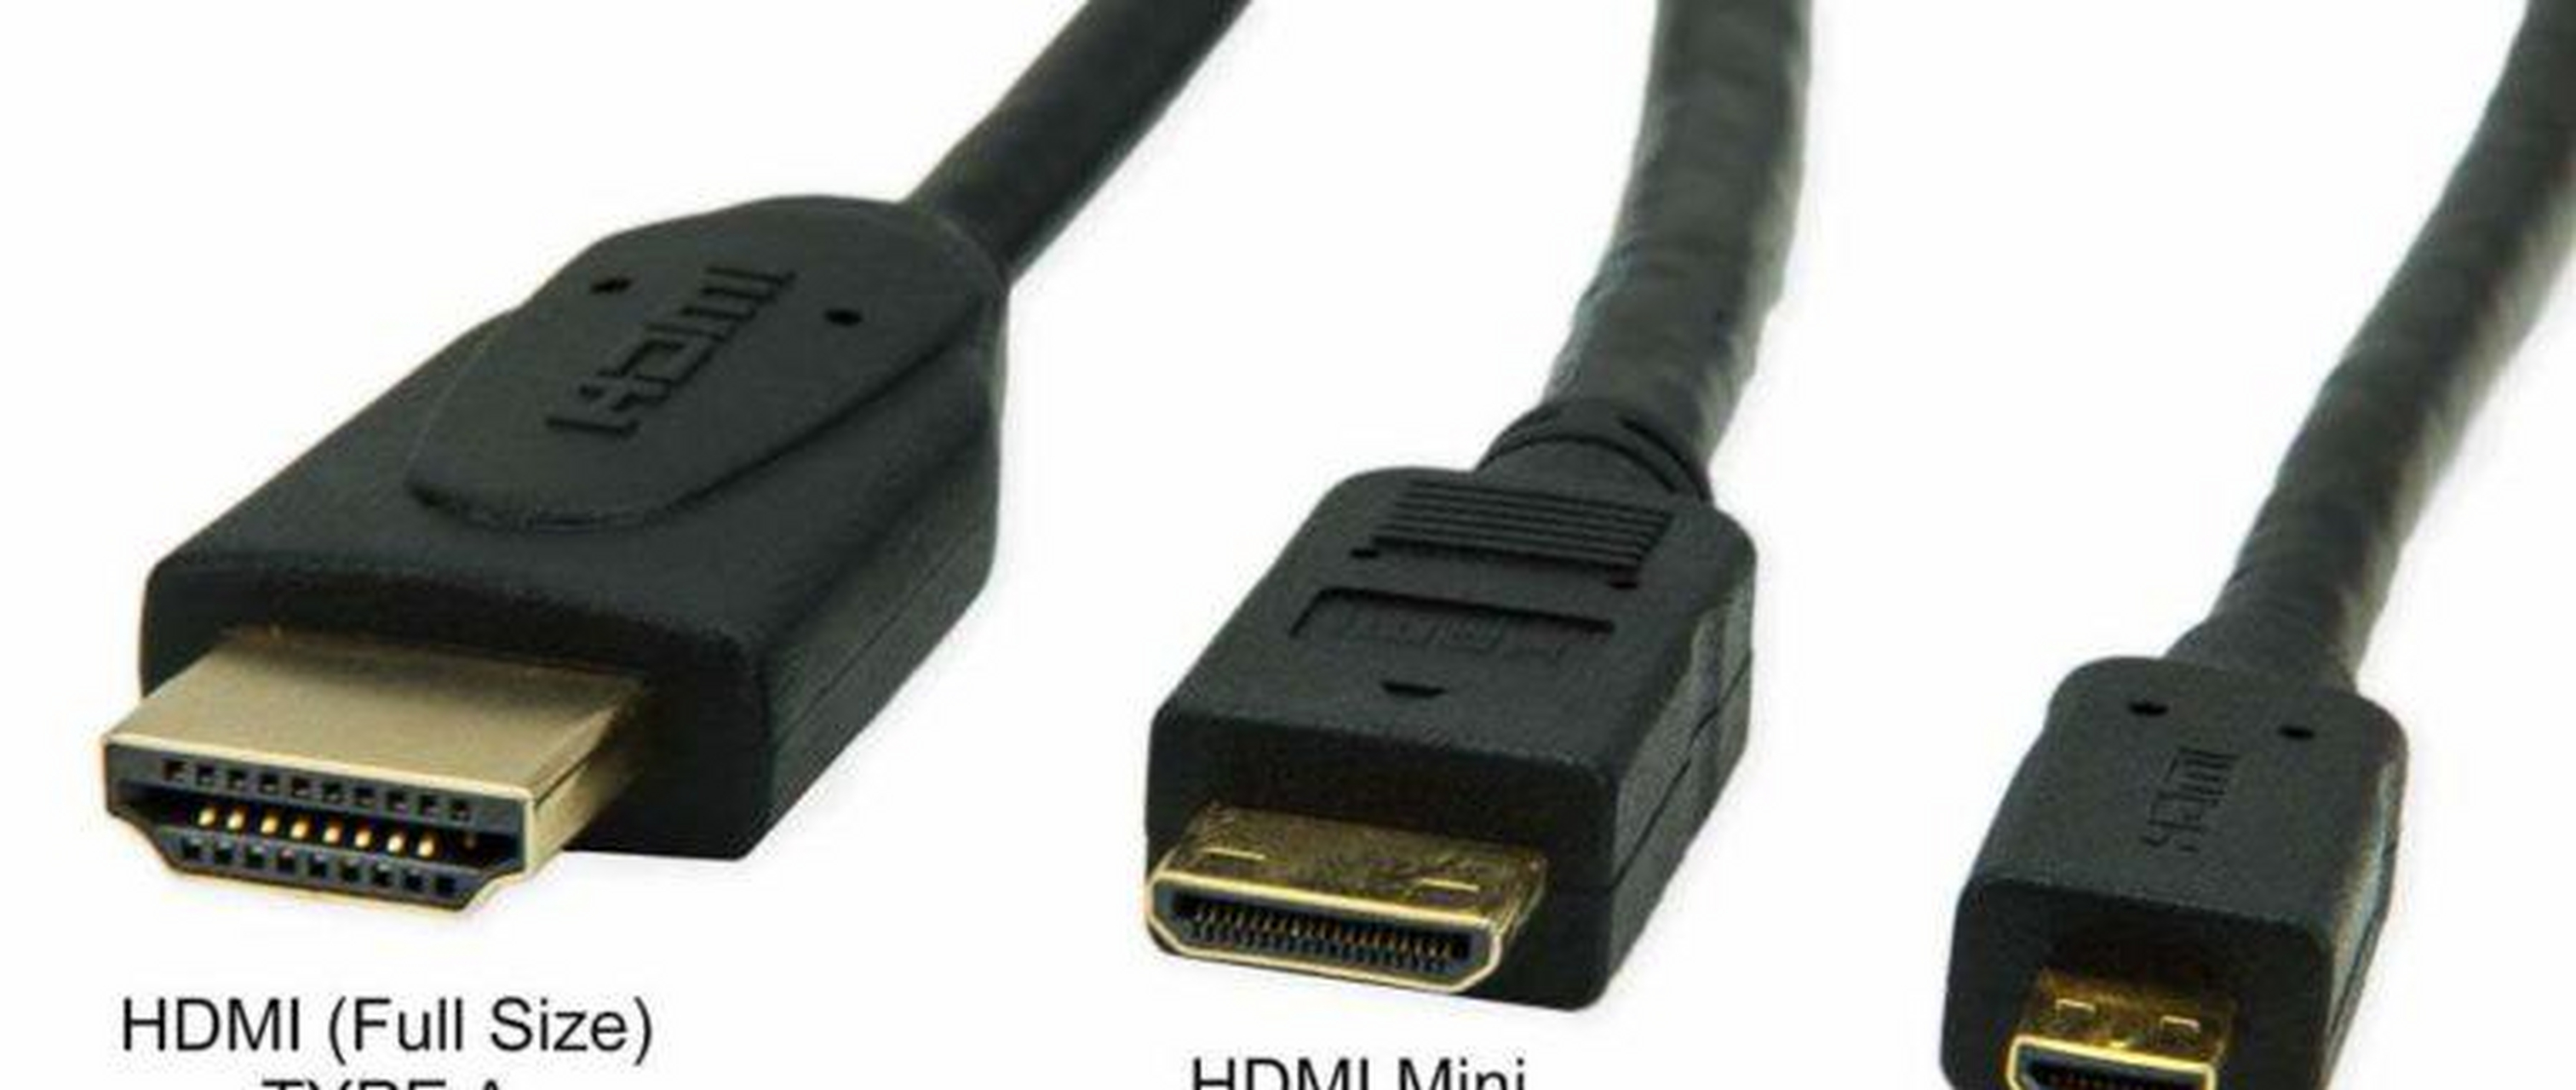 什么是 hdmi?电缆的类型有何不同?